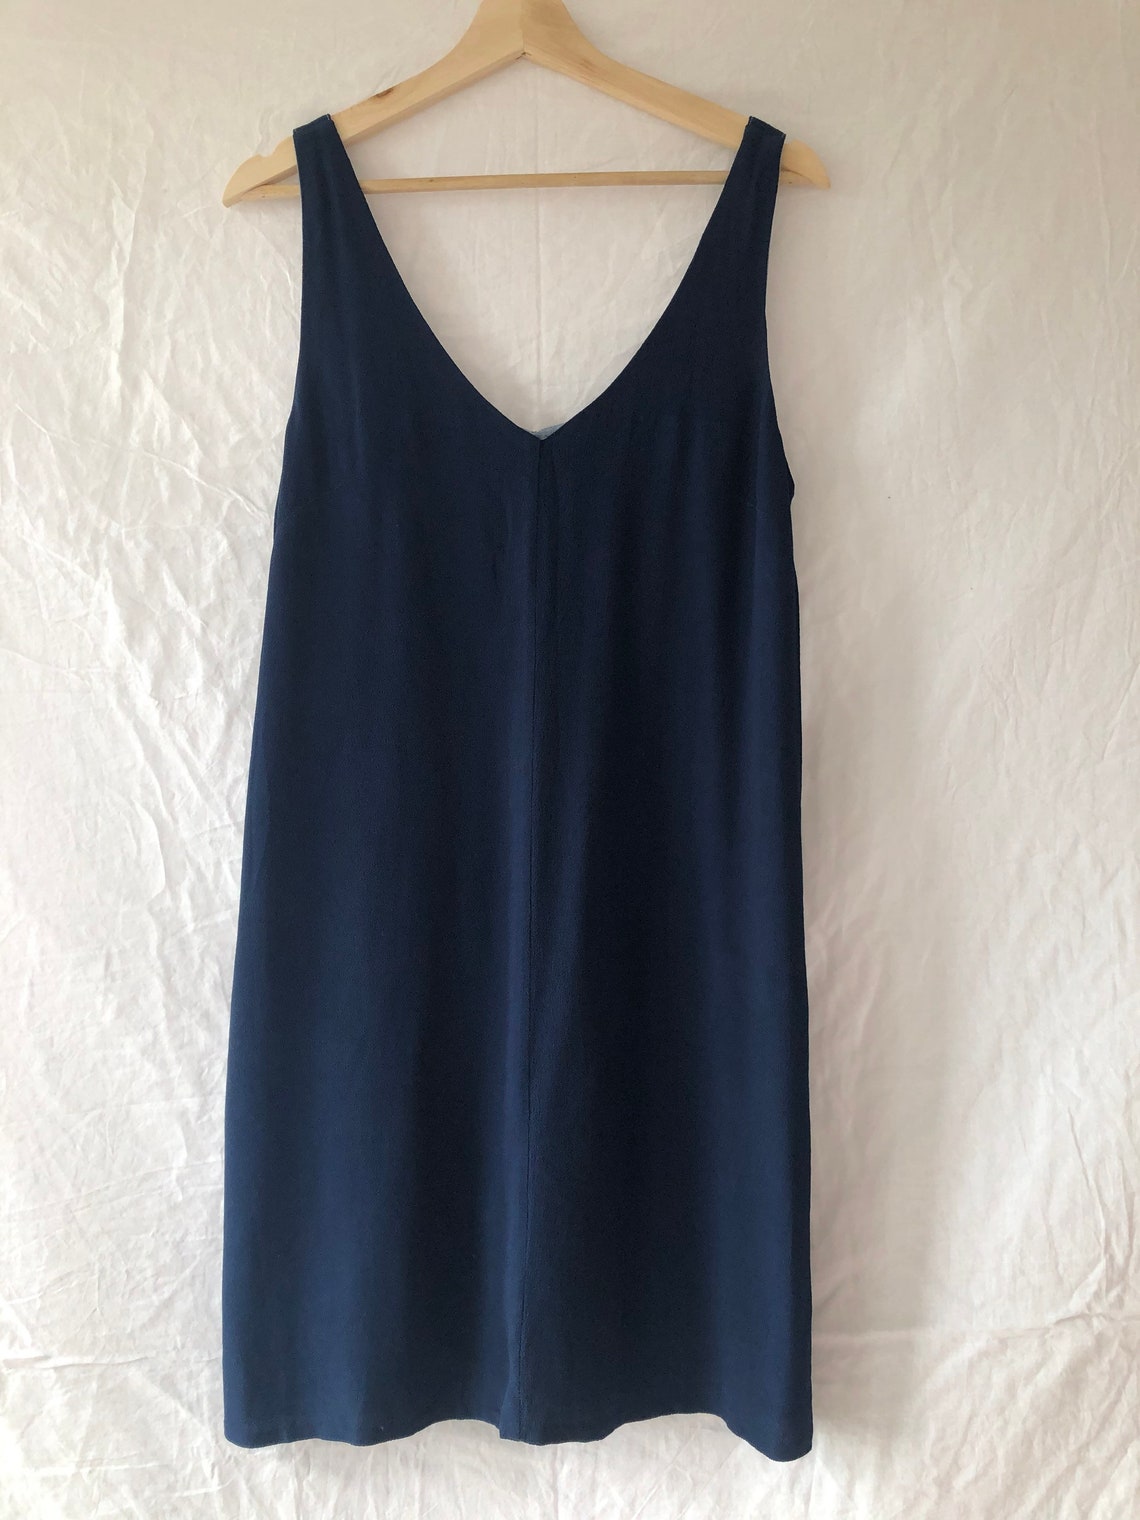 Minimalist Viscose Navy Blue Slip Dress by HUSH Size 10/M | Etsy